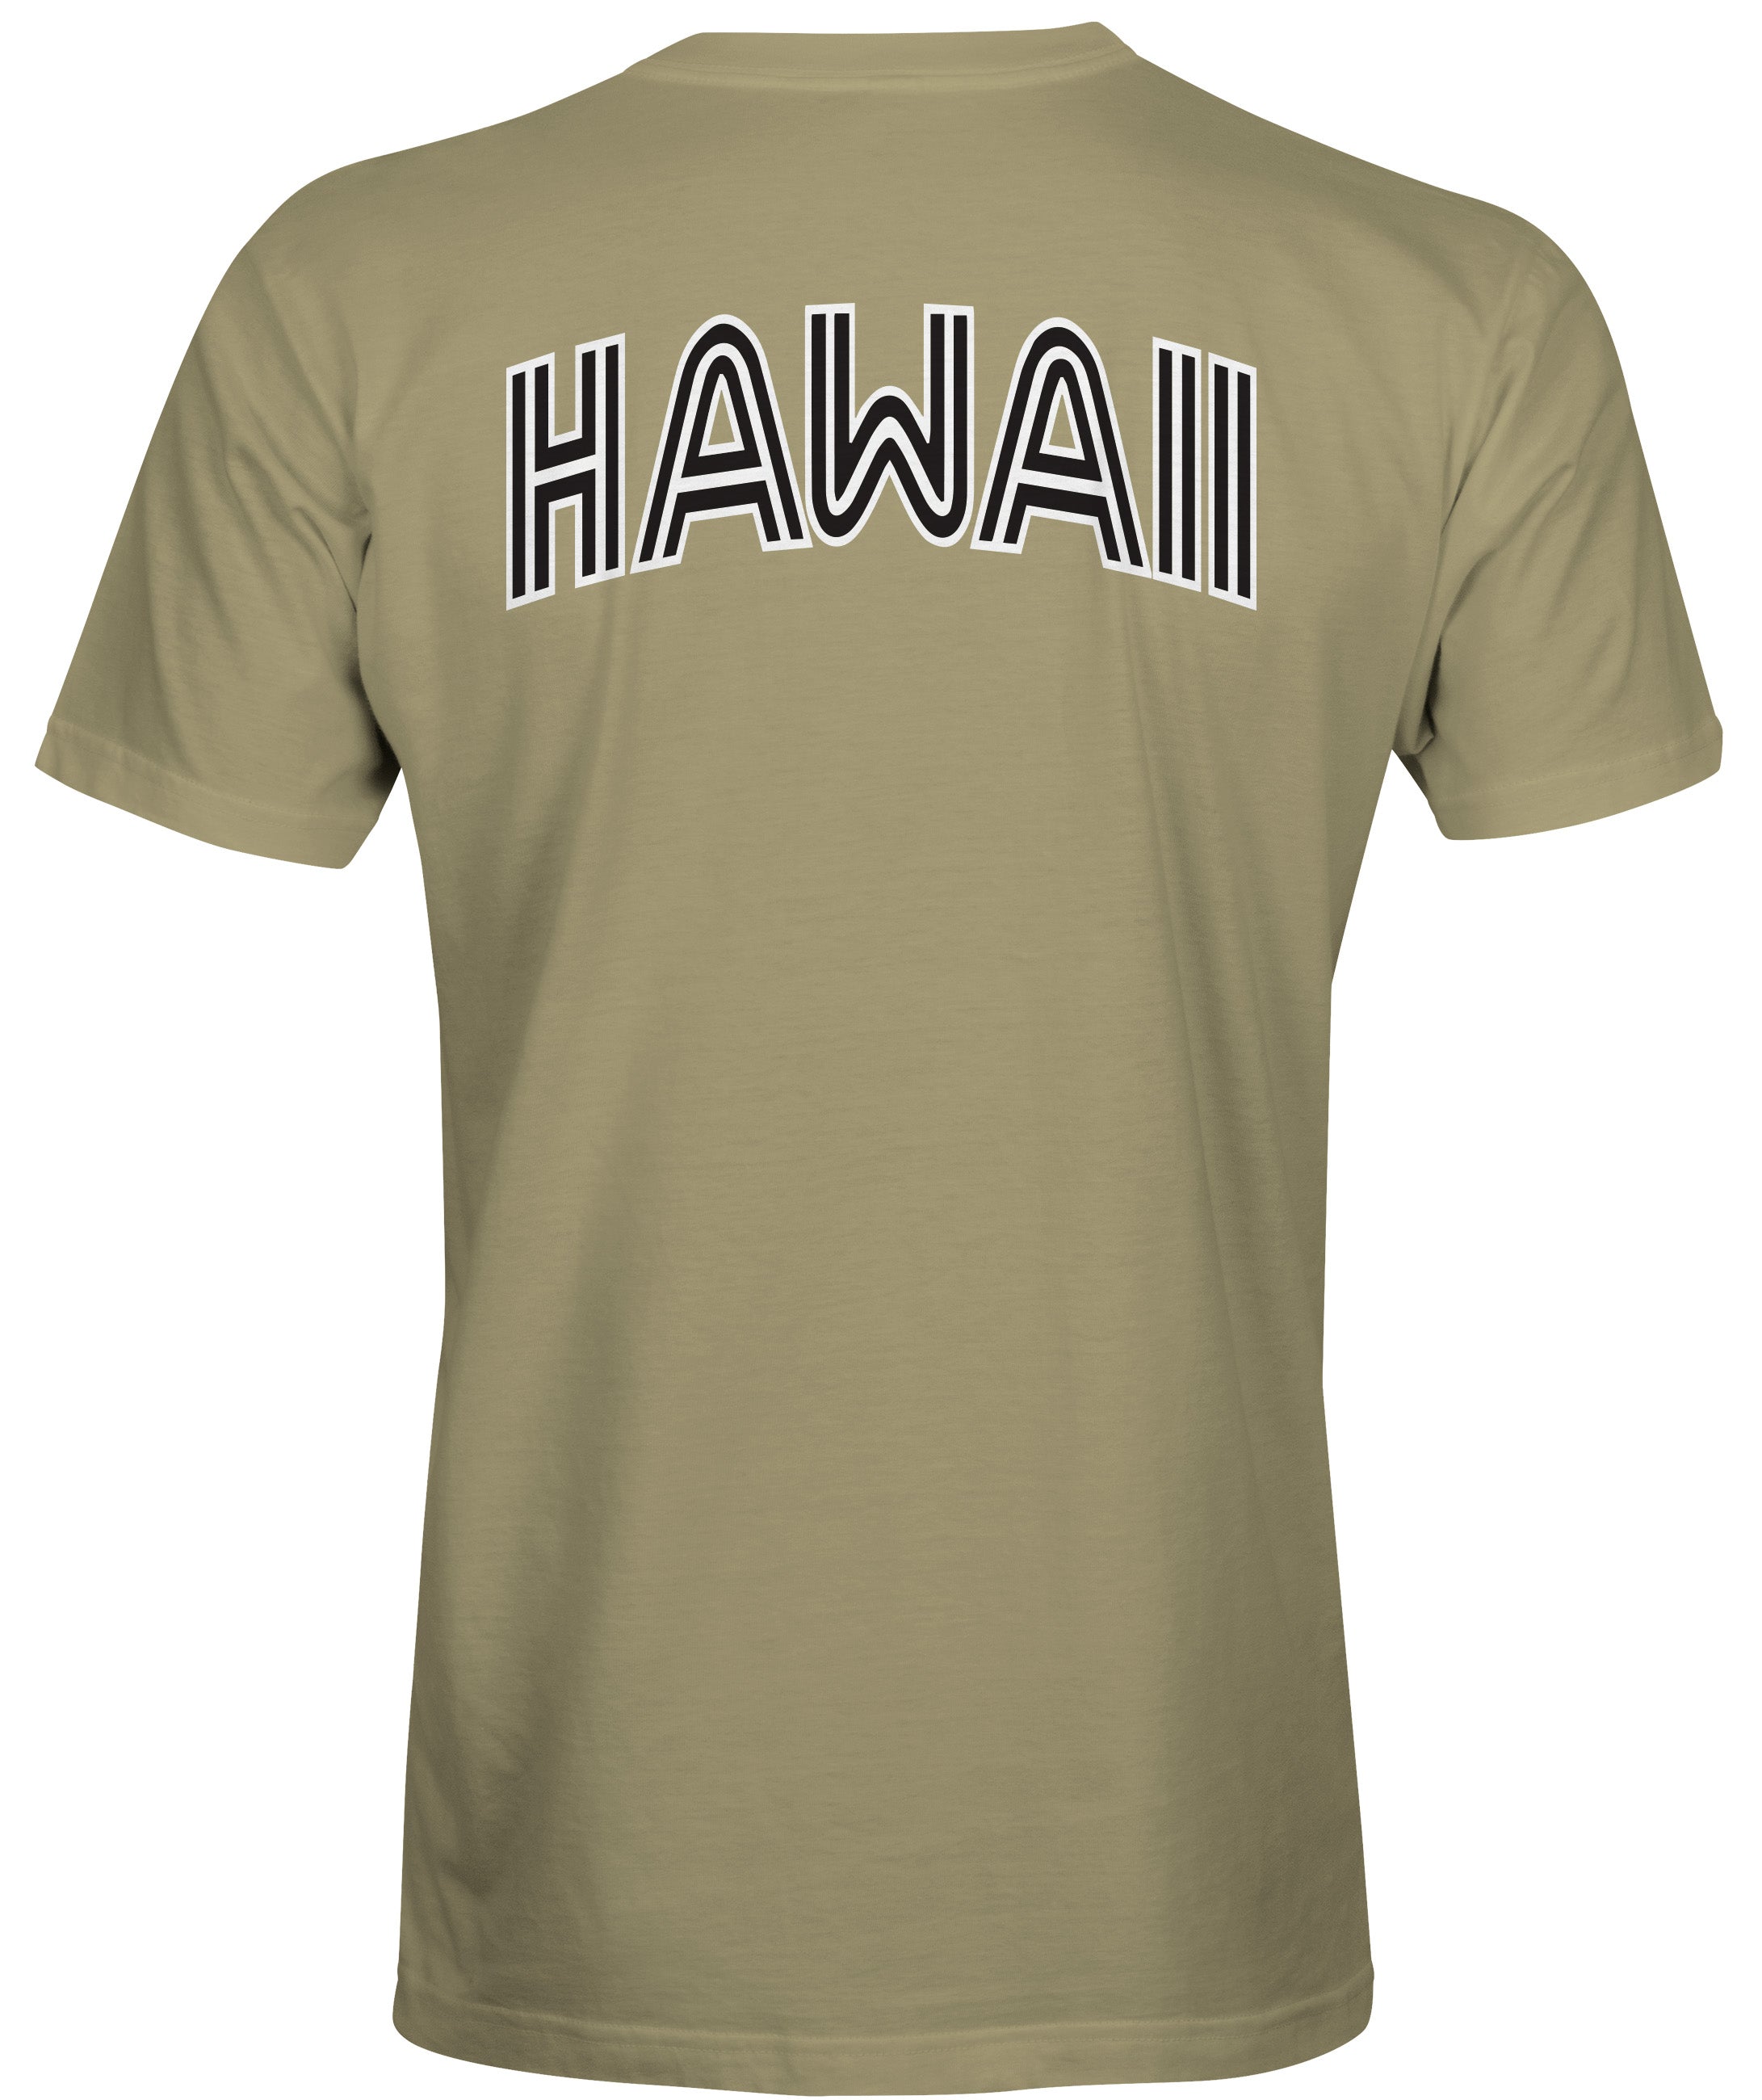 Hawaii Tan